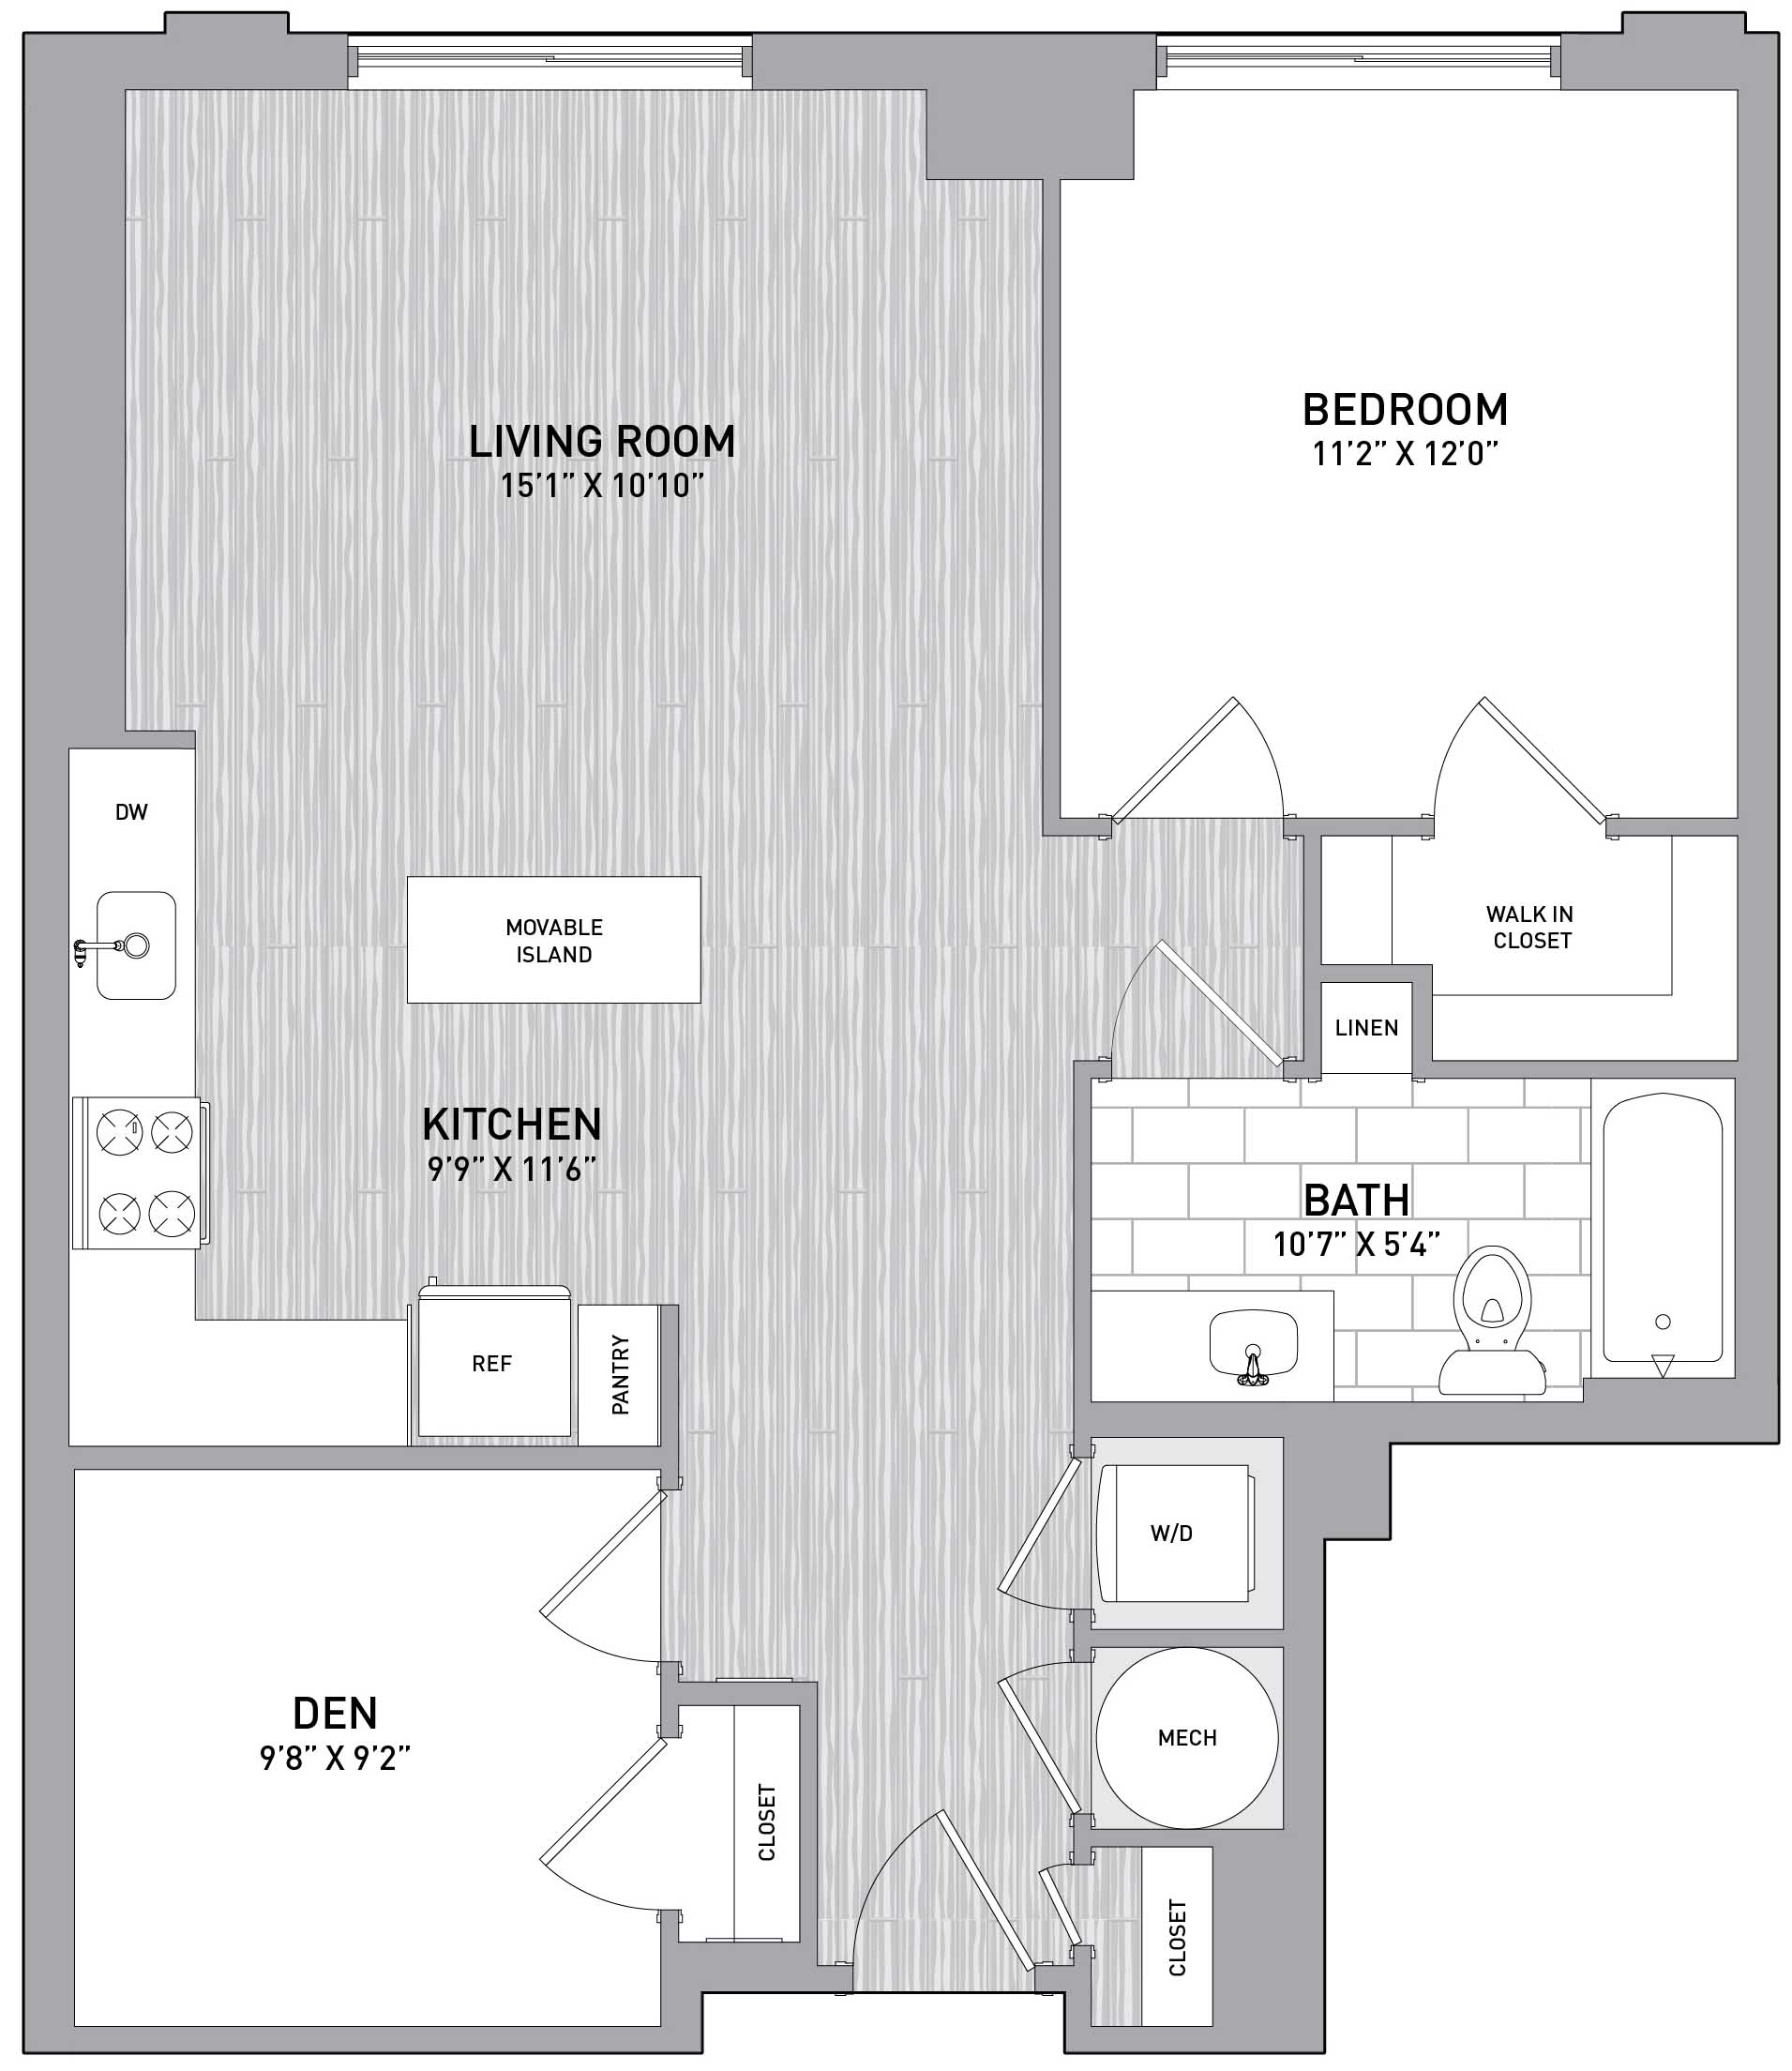 Floorplan Image of unit 151-1217